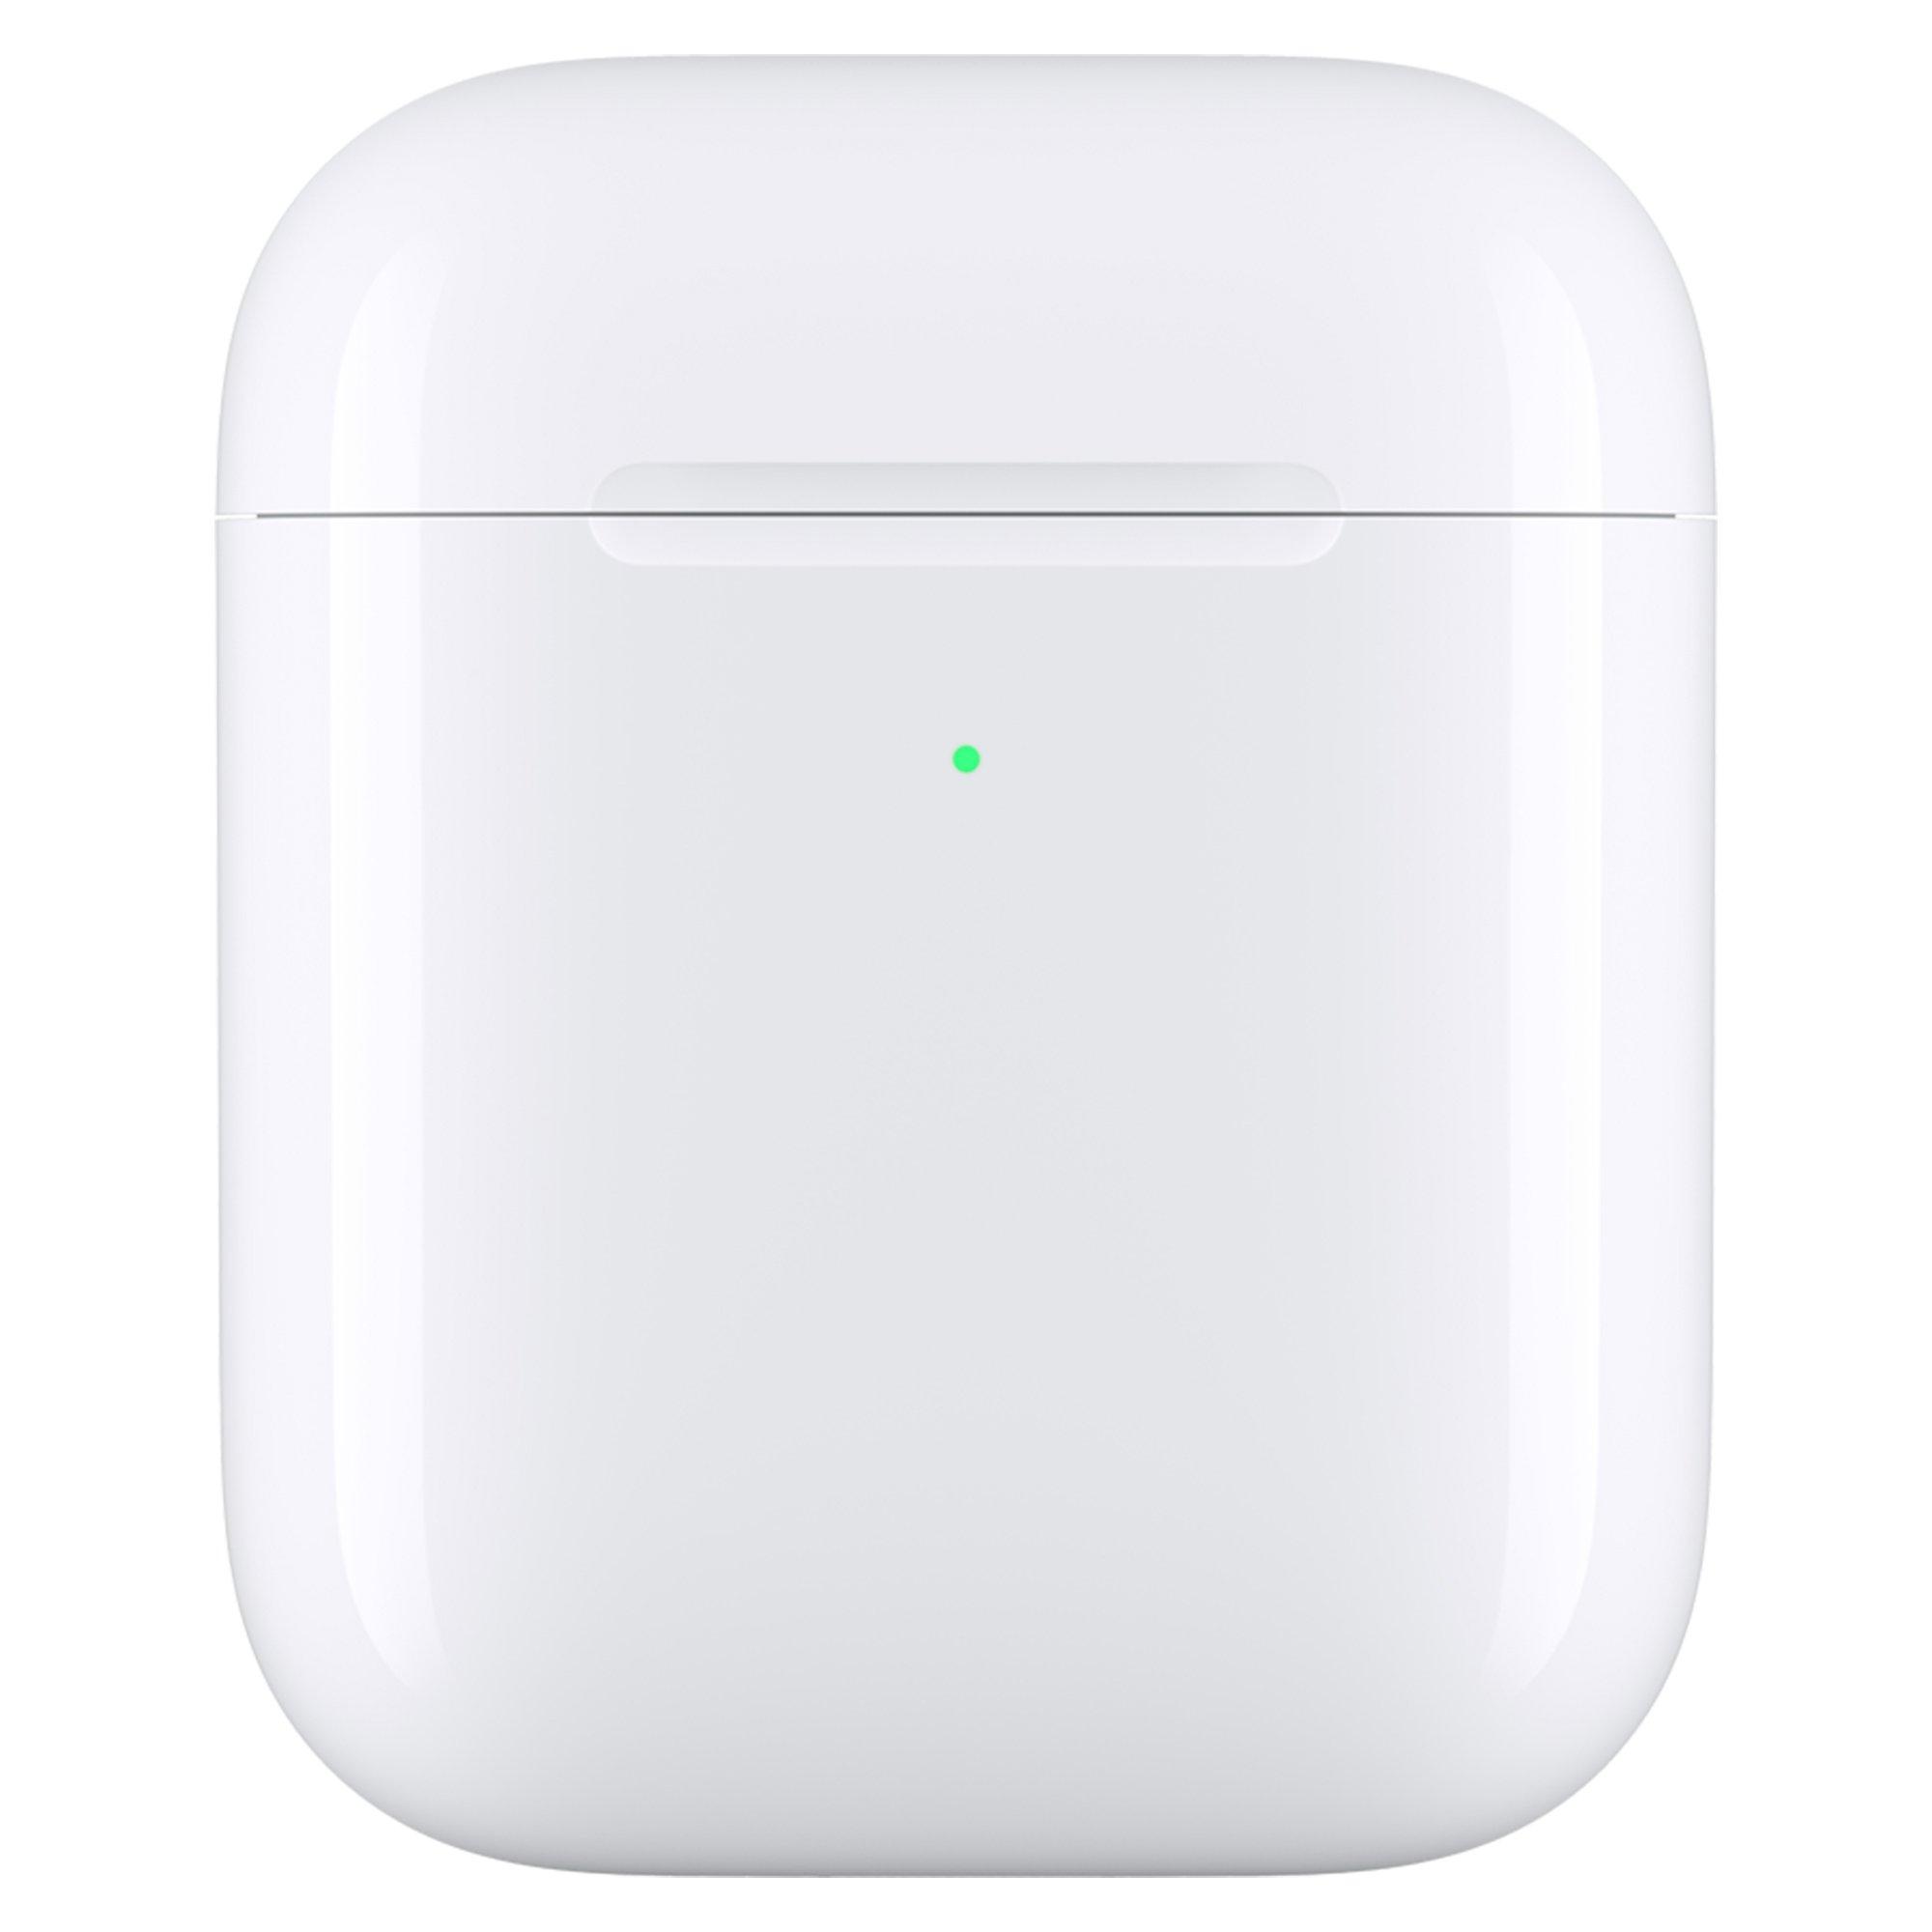 Apple Wireless Charging Case AirPods Étui de rechargement 